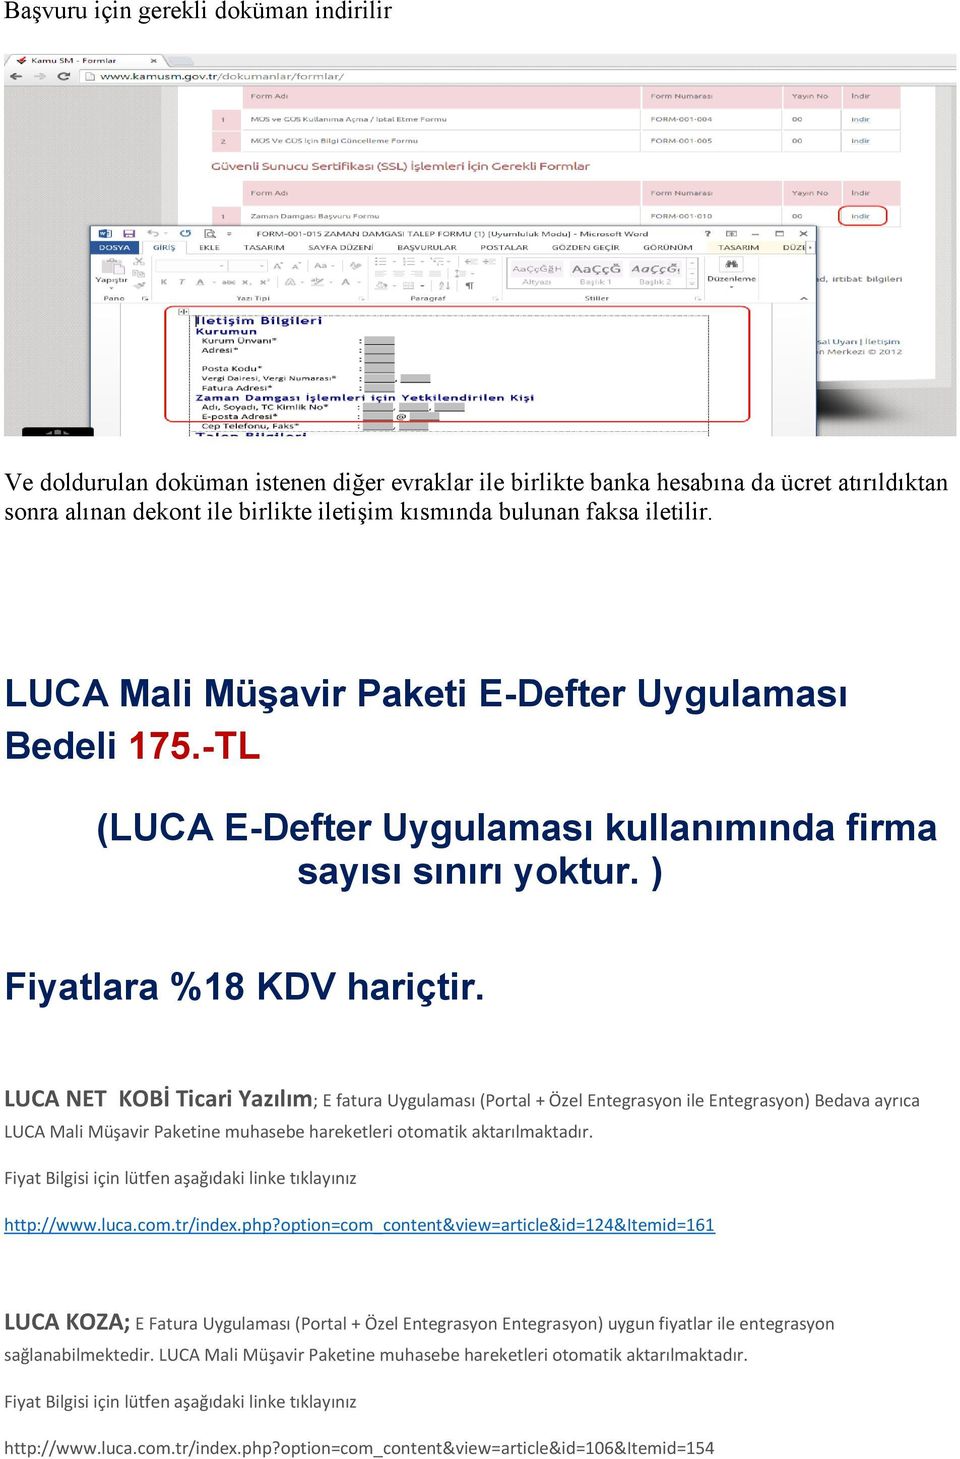 LUCA NET KOBİ Ticari Yazılım; E fatura Uygulaması (Portal + Özel Entegrasyon ile Entegrasyon) Bedava ayrıca LUCA Mali Müşavir Paketine muhasebe hareketleri otomatik aktarılmaktadır.